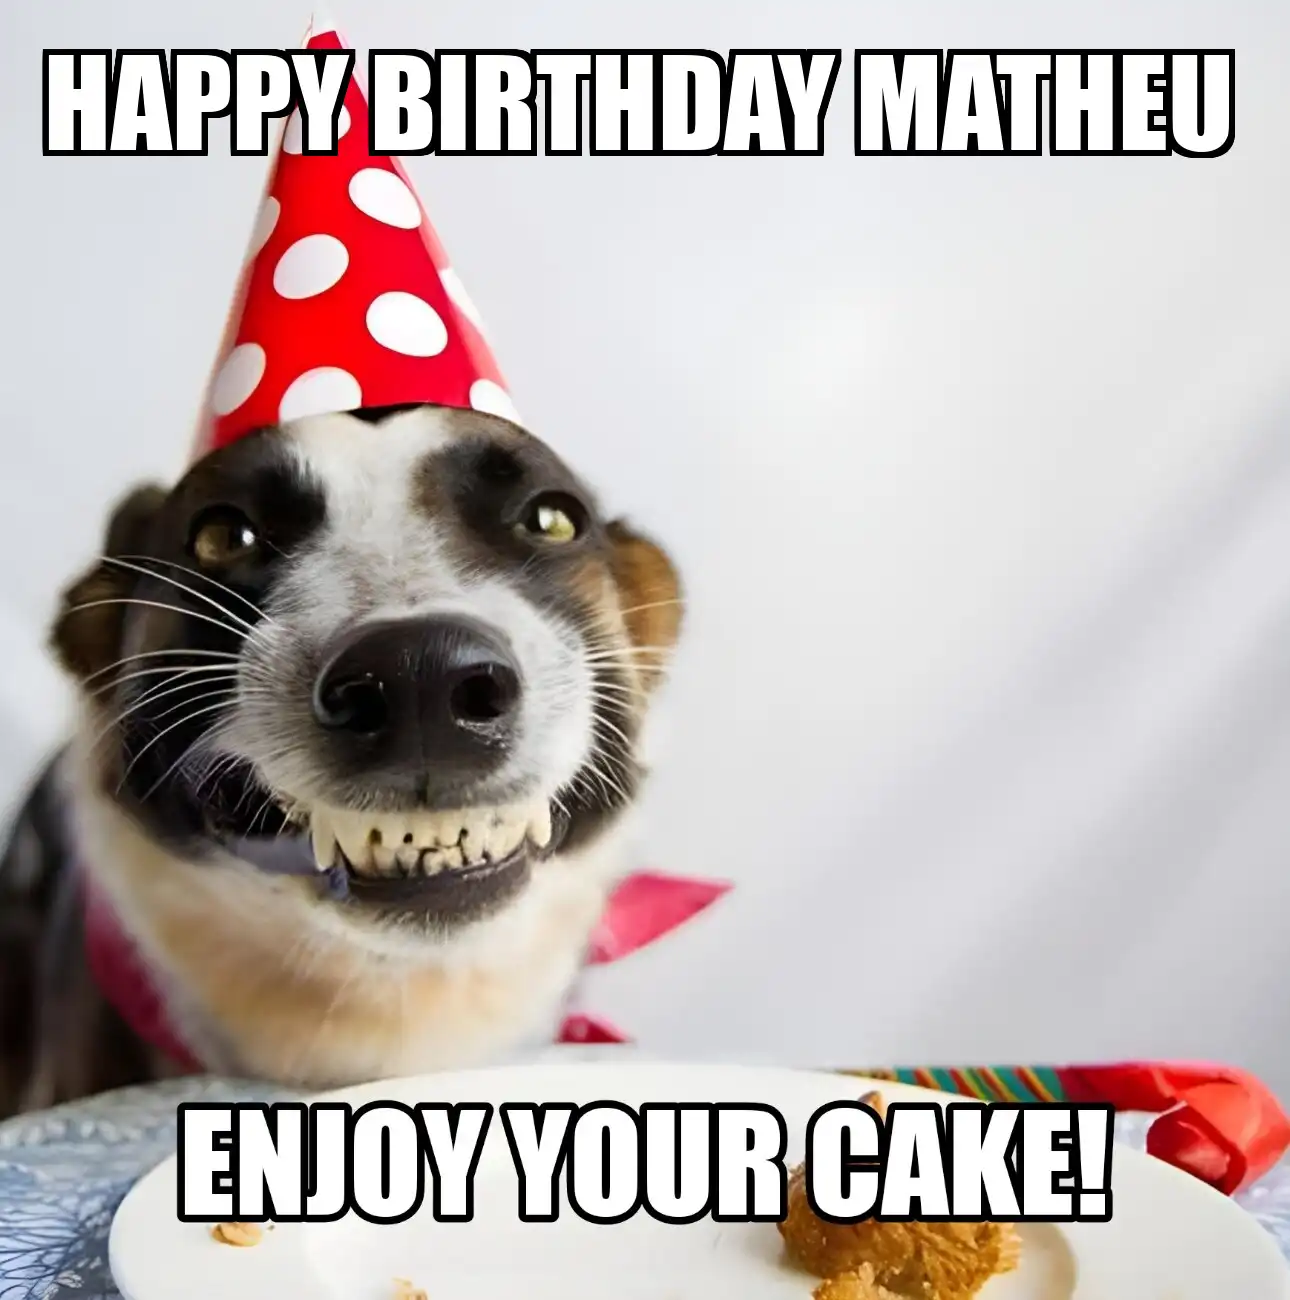 Happy Birthday Matheu Enjoy Your Cake Dog Meme